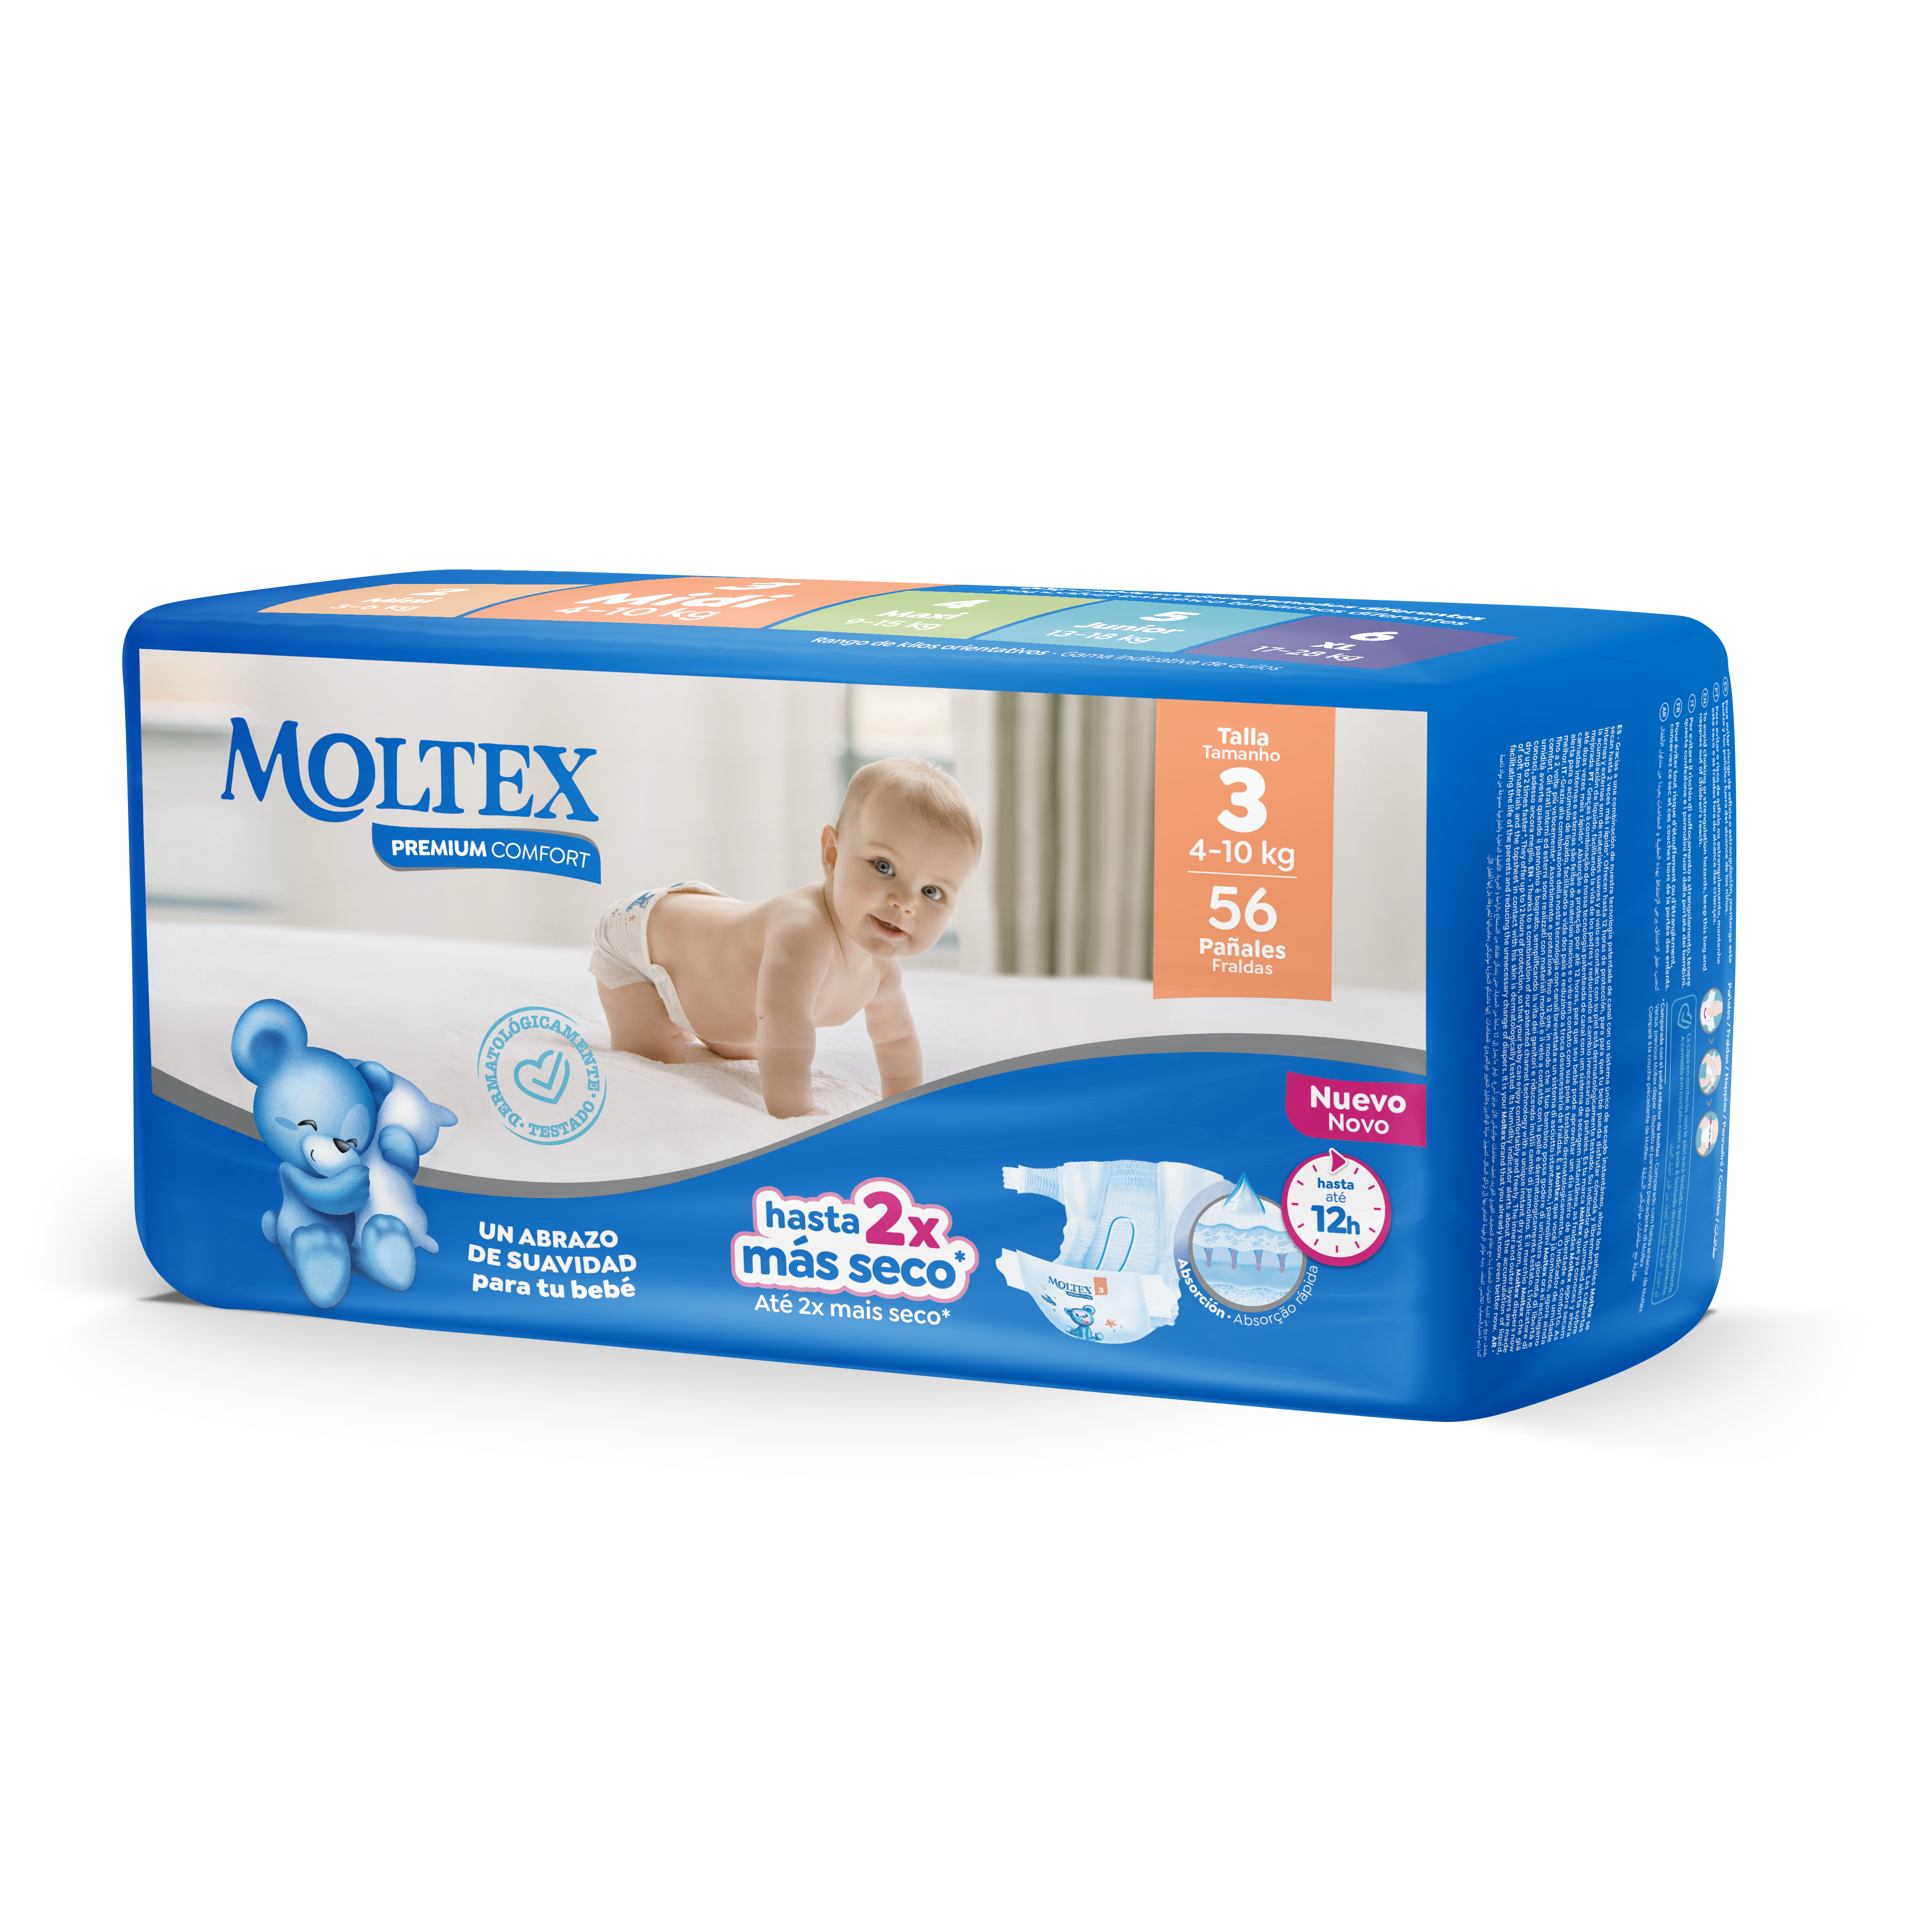 Pañales Premium Comfort Talla 6 XL · Moltex · 30 unidades